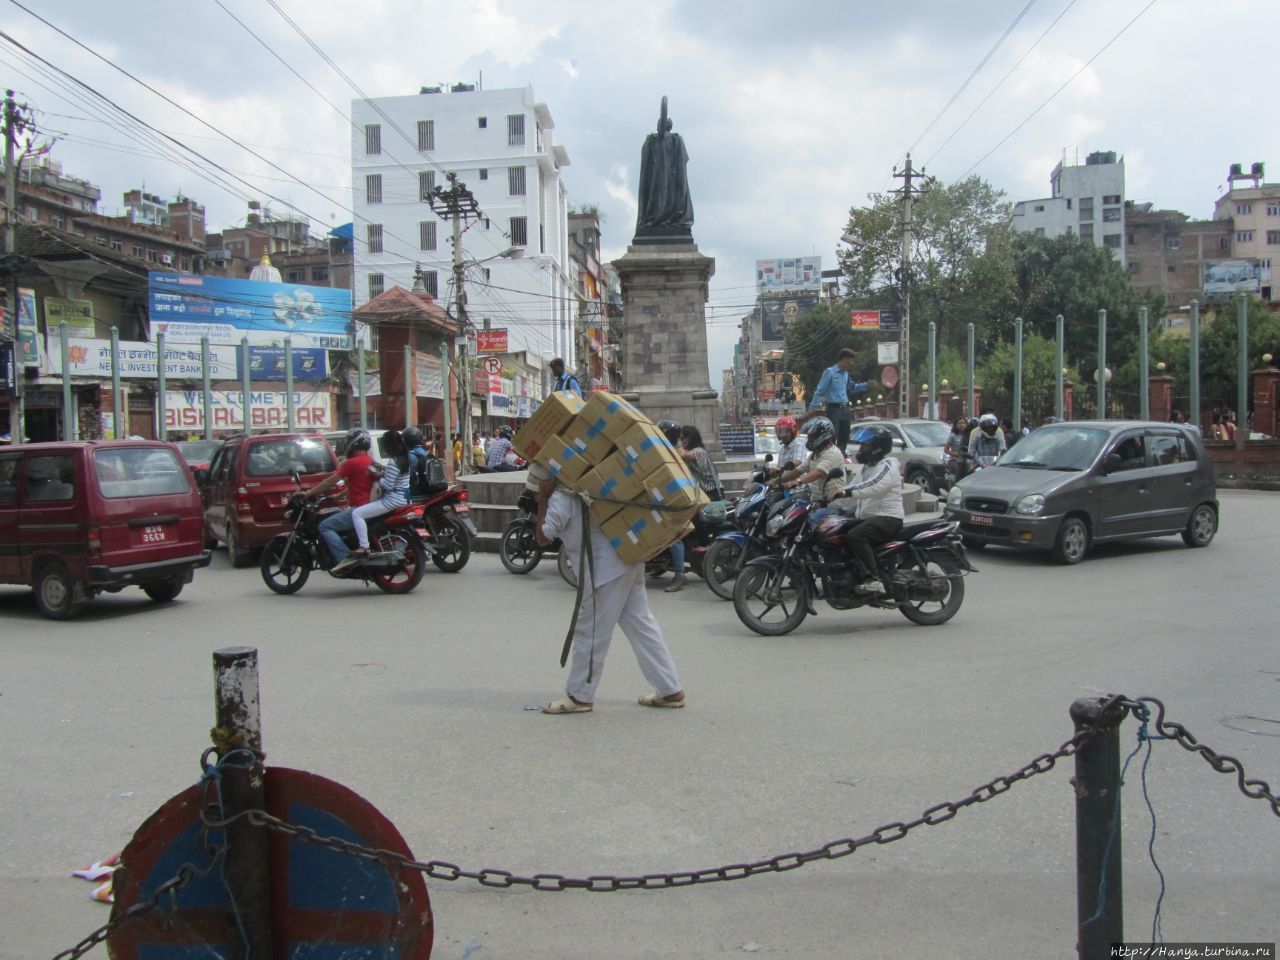 Памятник премьер-министру, Джуддха Шамшер Катманду, Непал